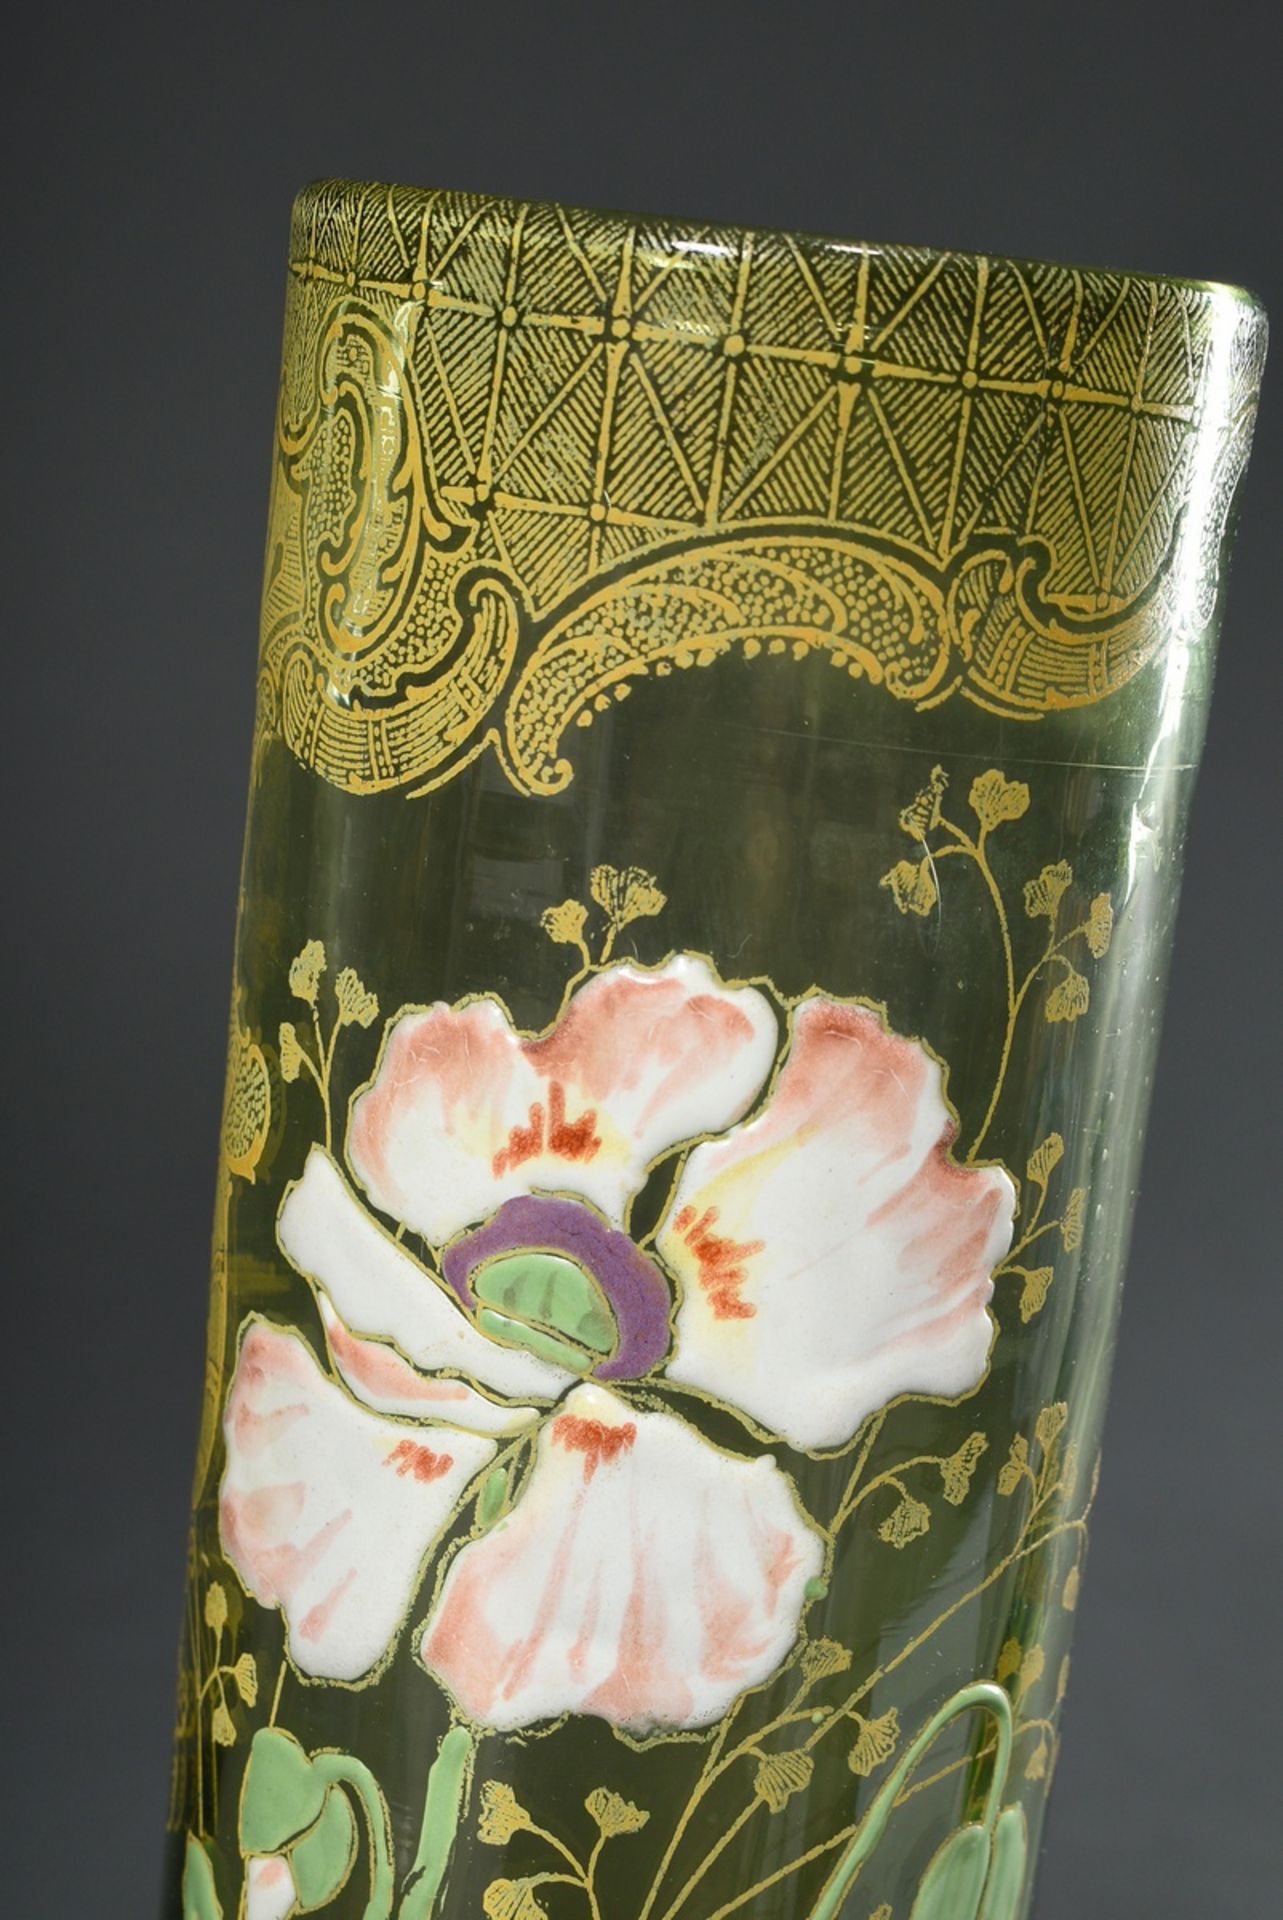 Jugendstil Vase mit floralem Dekor "Mohnblüte" in polychromer Emaillemalerei über gedrucktem Goldde - Bild 3 aus 4